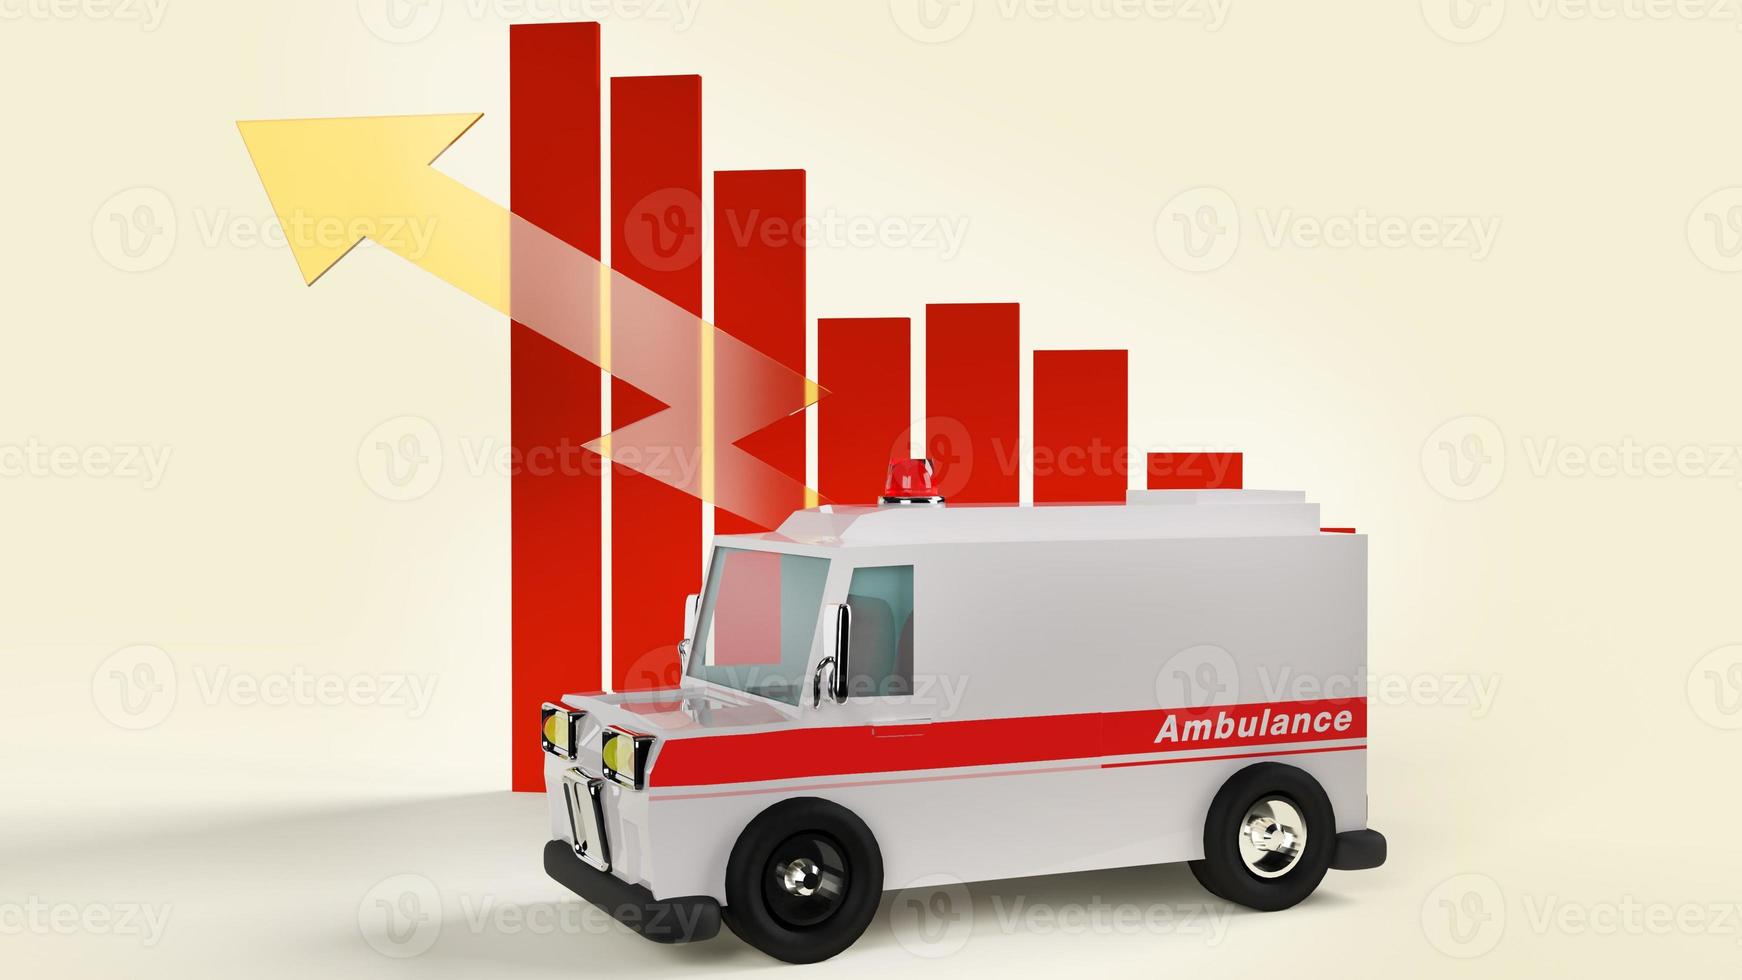 voiture d'ambulance et graphique rendu 3d pour le contenu des soins de santé. photo